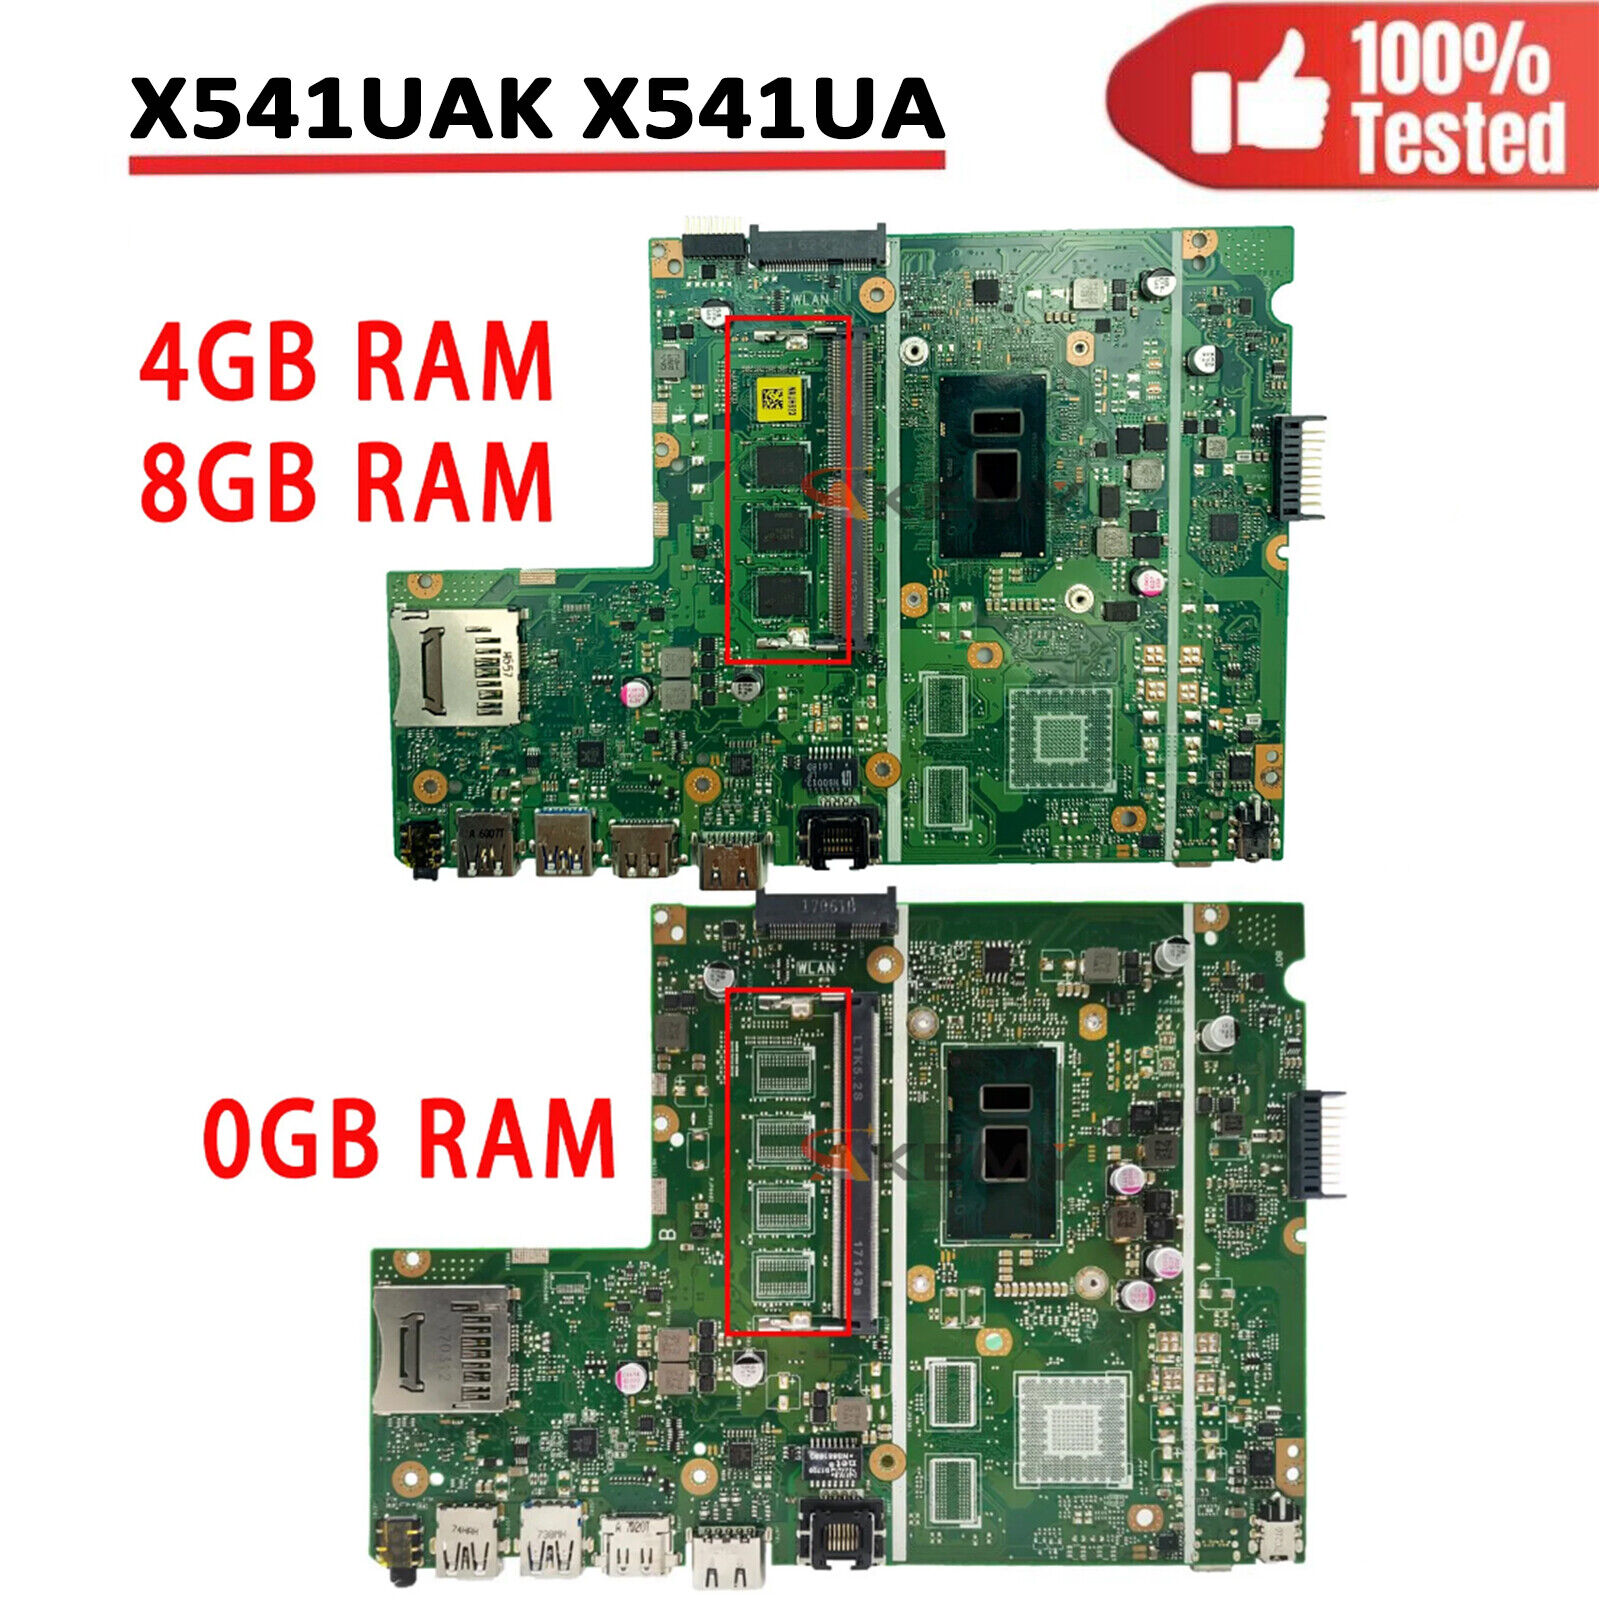 X541ua X541uak Mainboard For Asus X541uj X541uv X541uq X541u W/ I3 I5 I7 Cpu